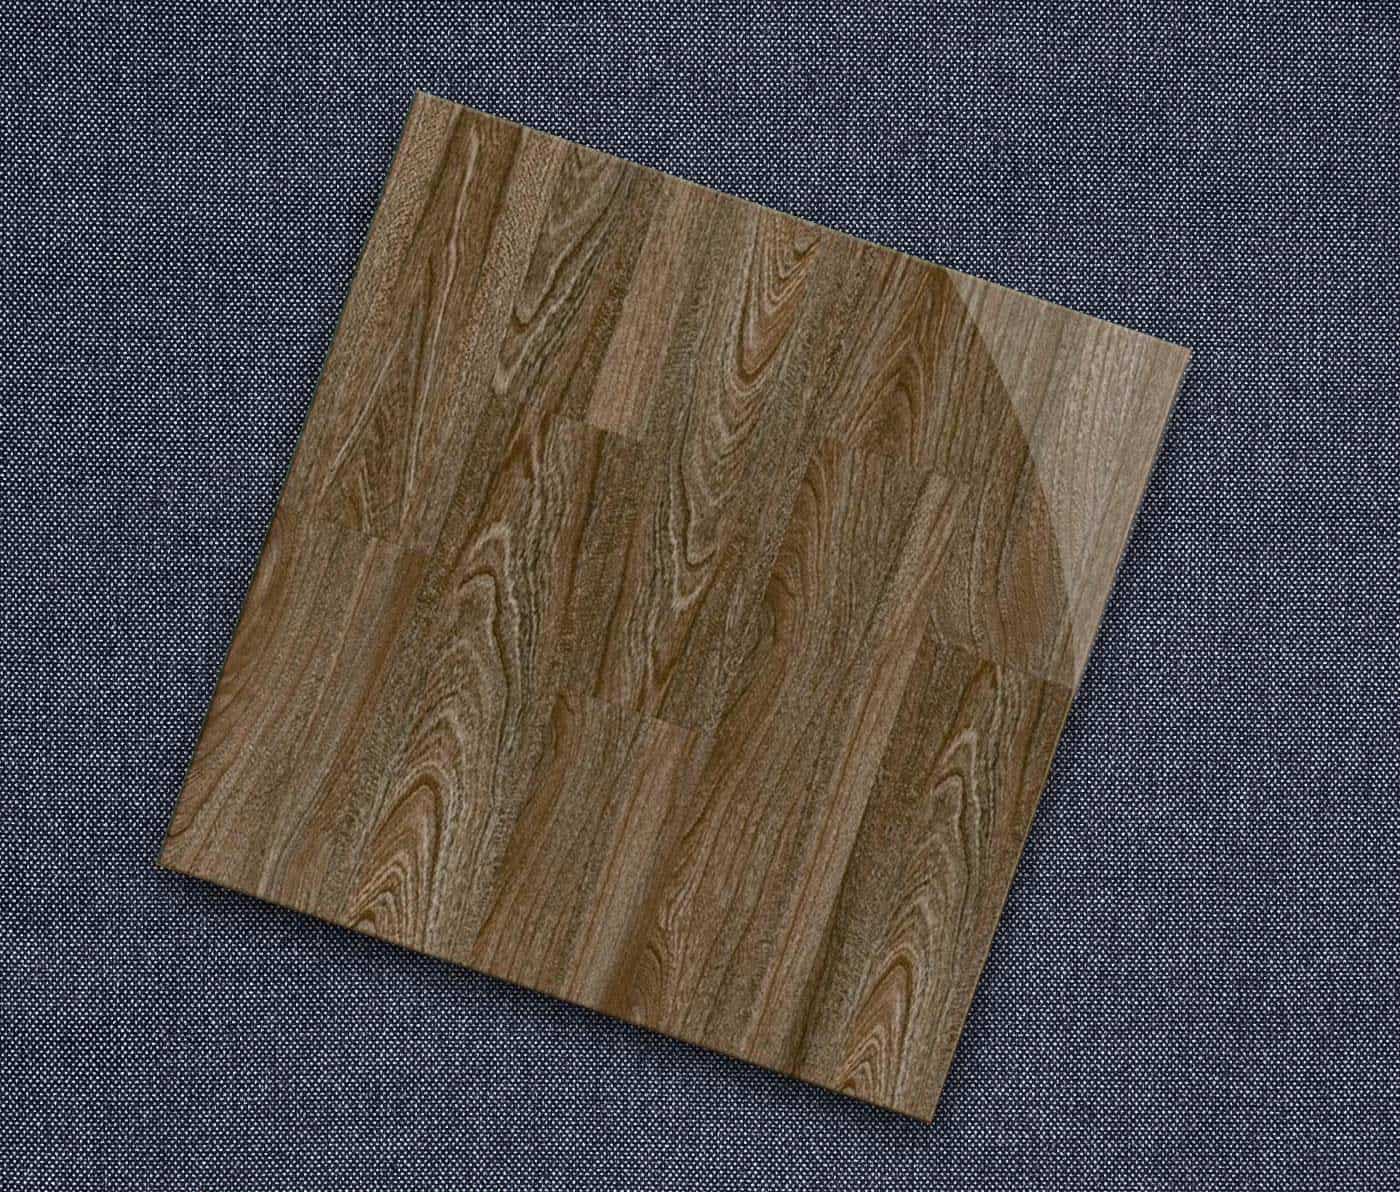 Mẫu gạch giả gỗ CMC mã LX 6667 tông màu nâu lạnh kết hợp cùng những đường vân gỗ xoáy lạ mắt